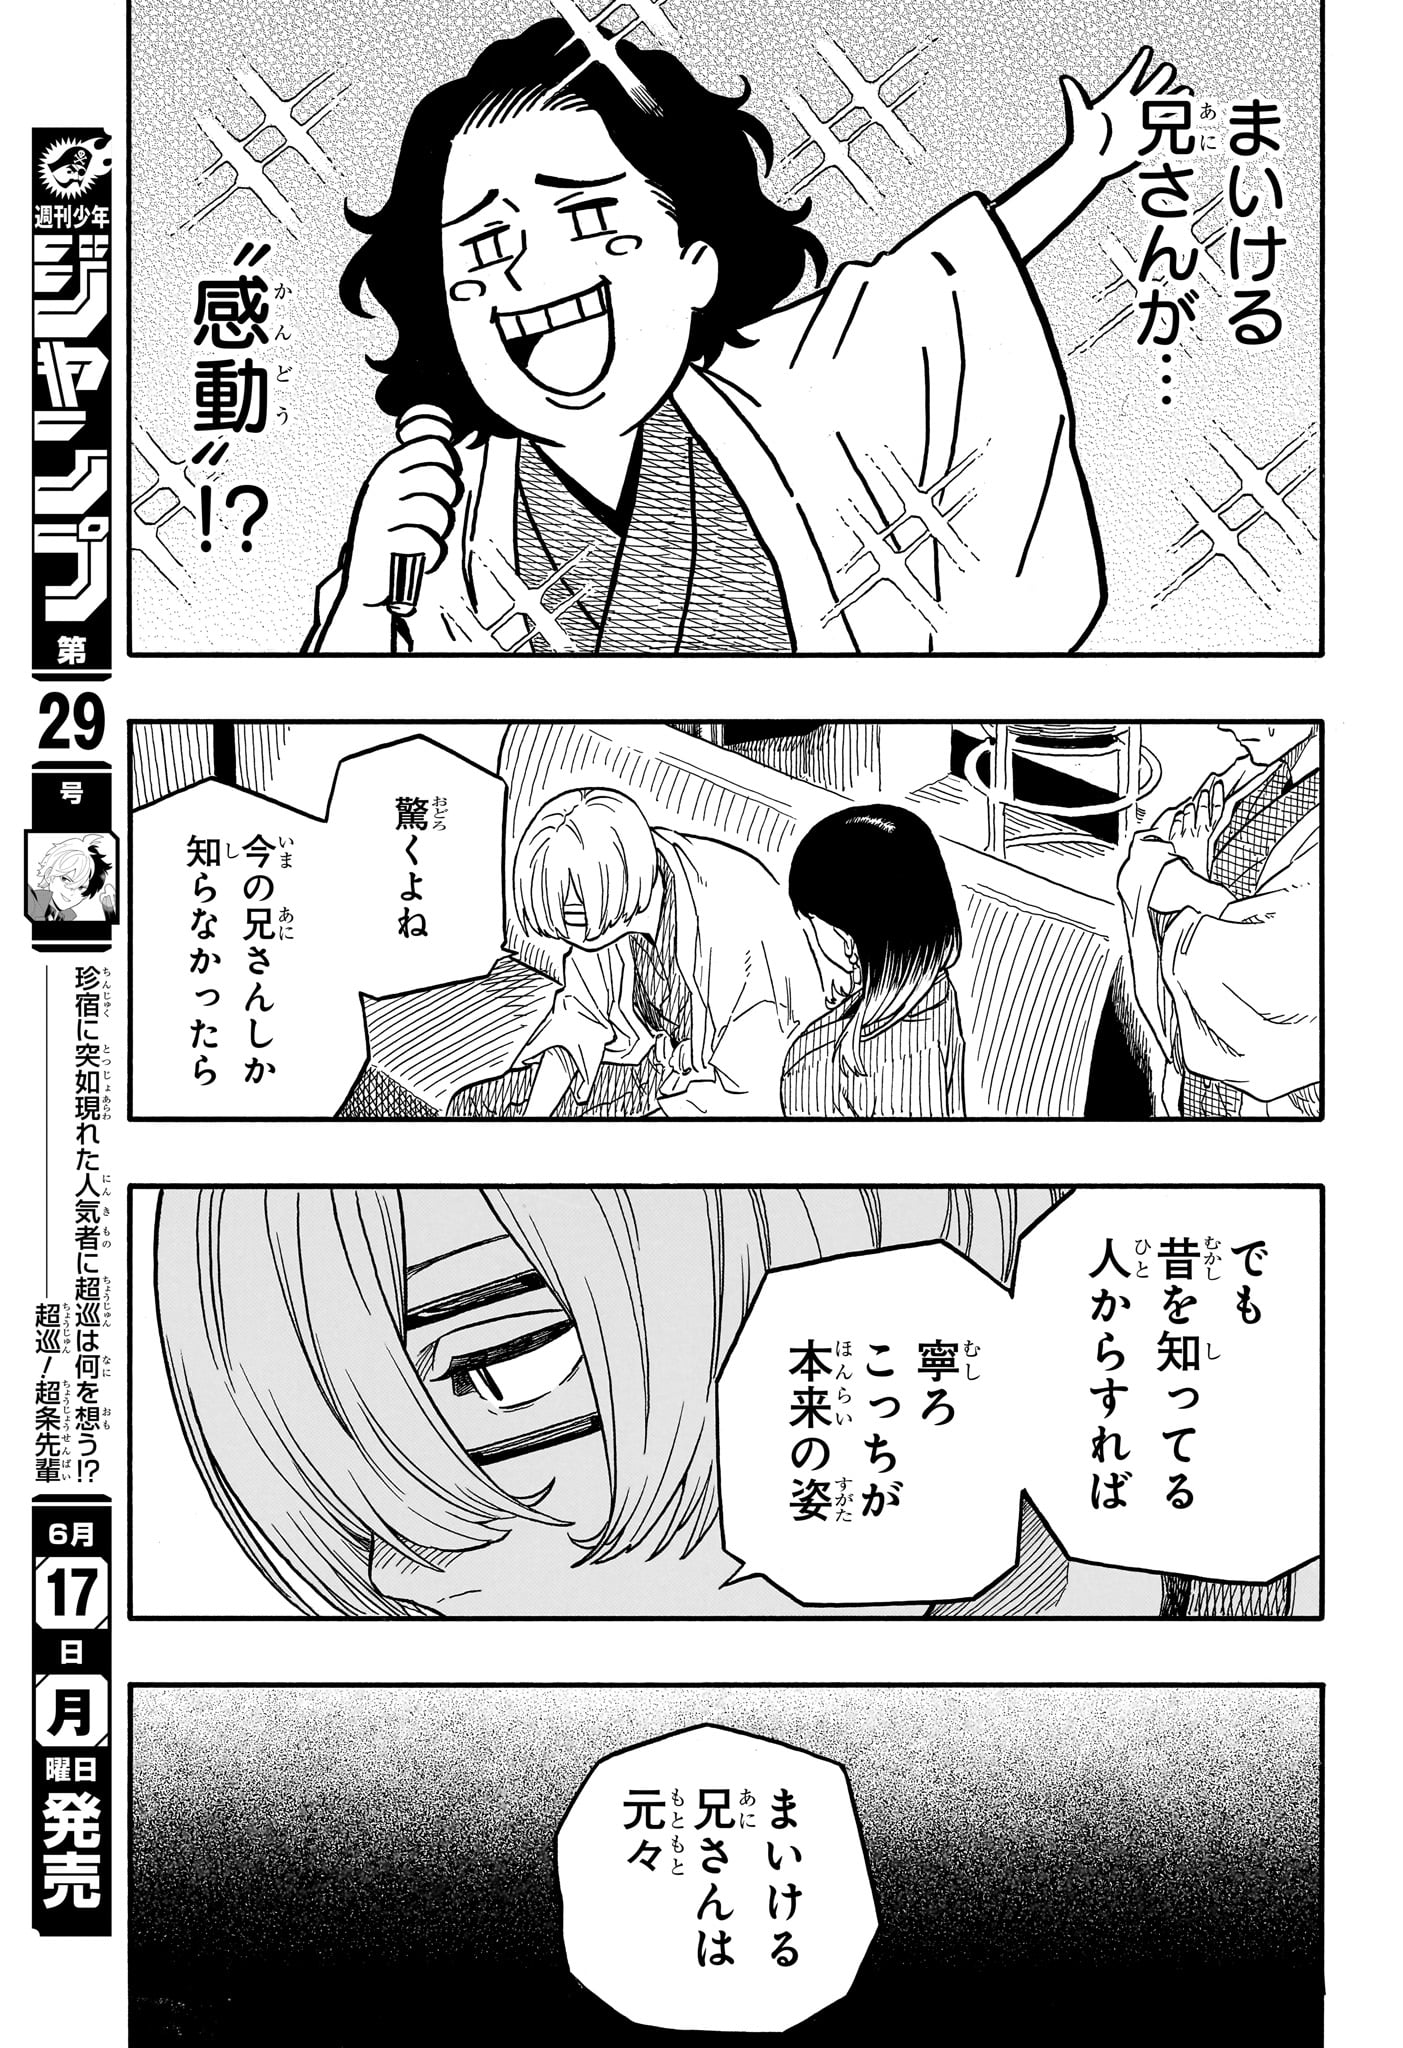 Akane-Banashi - Chapter 113 - Page 7